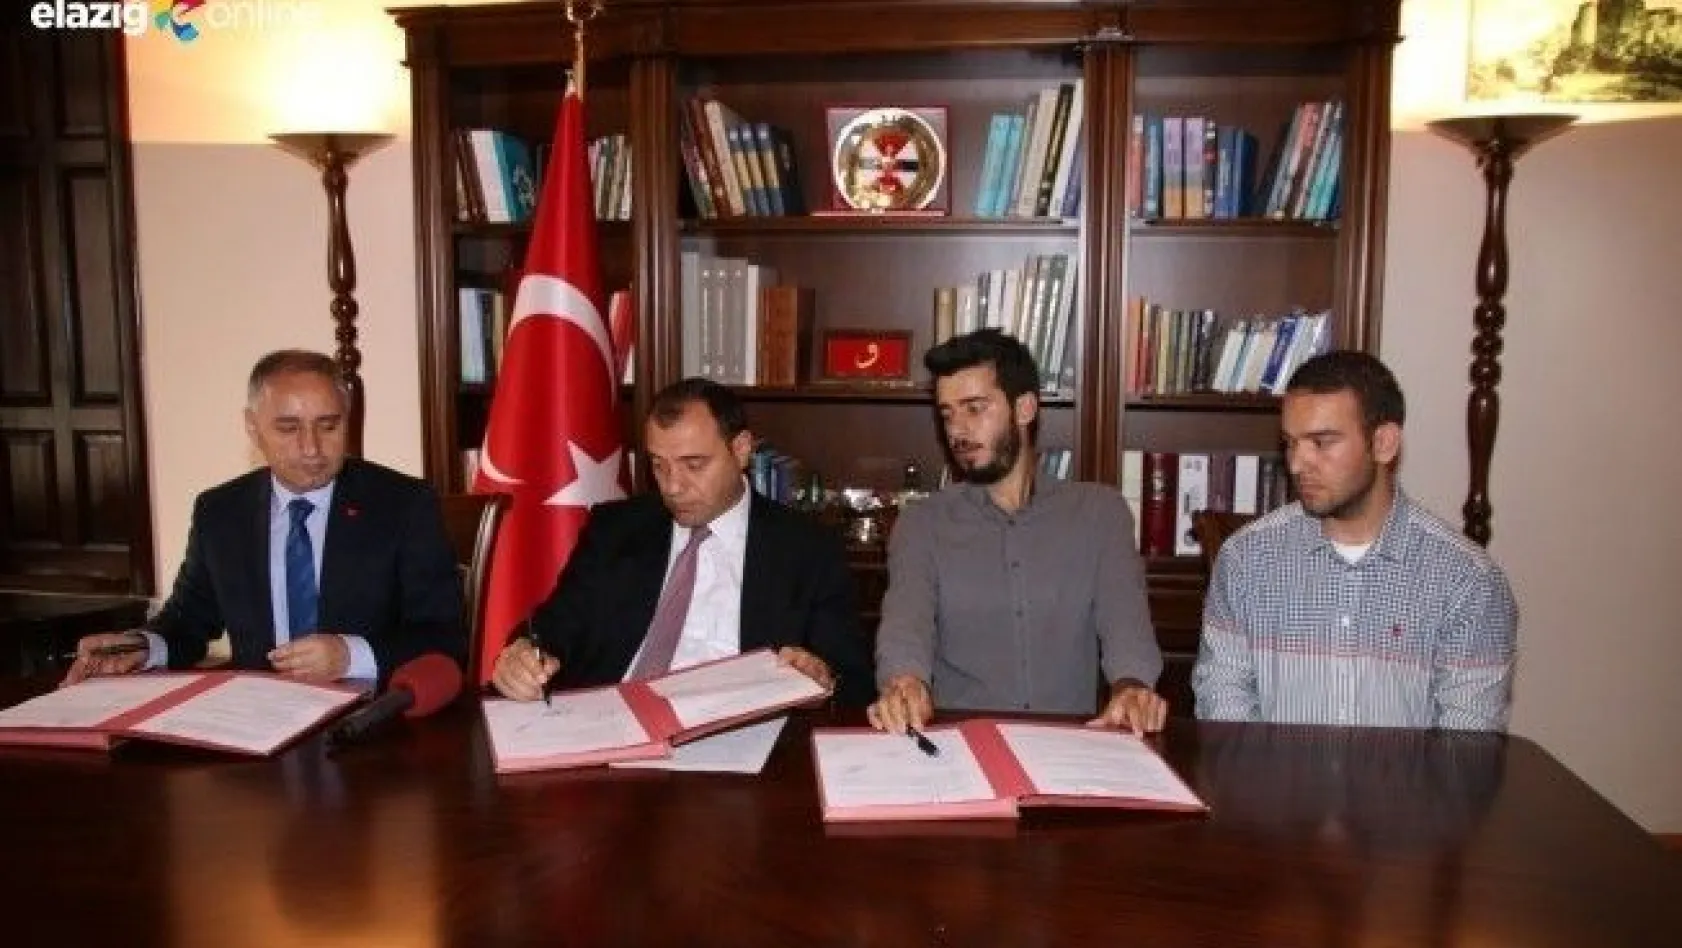 Elazığ'da 5 derslikli okul için protokol imzalandı